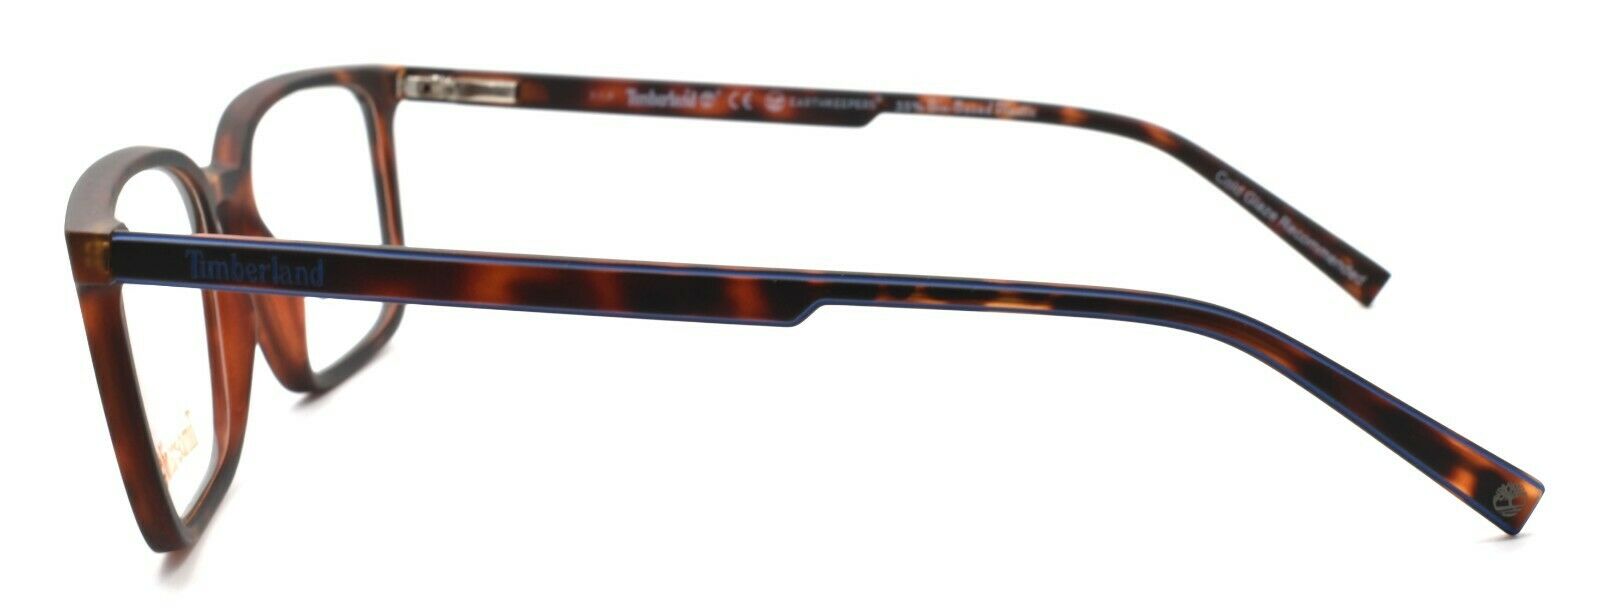 3-TIMBERLAND TB1621 052 Men's Eyeglasses Frames 55-18-145 Dark Havana + CASE-889214048998-IKSpecs